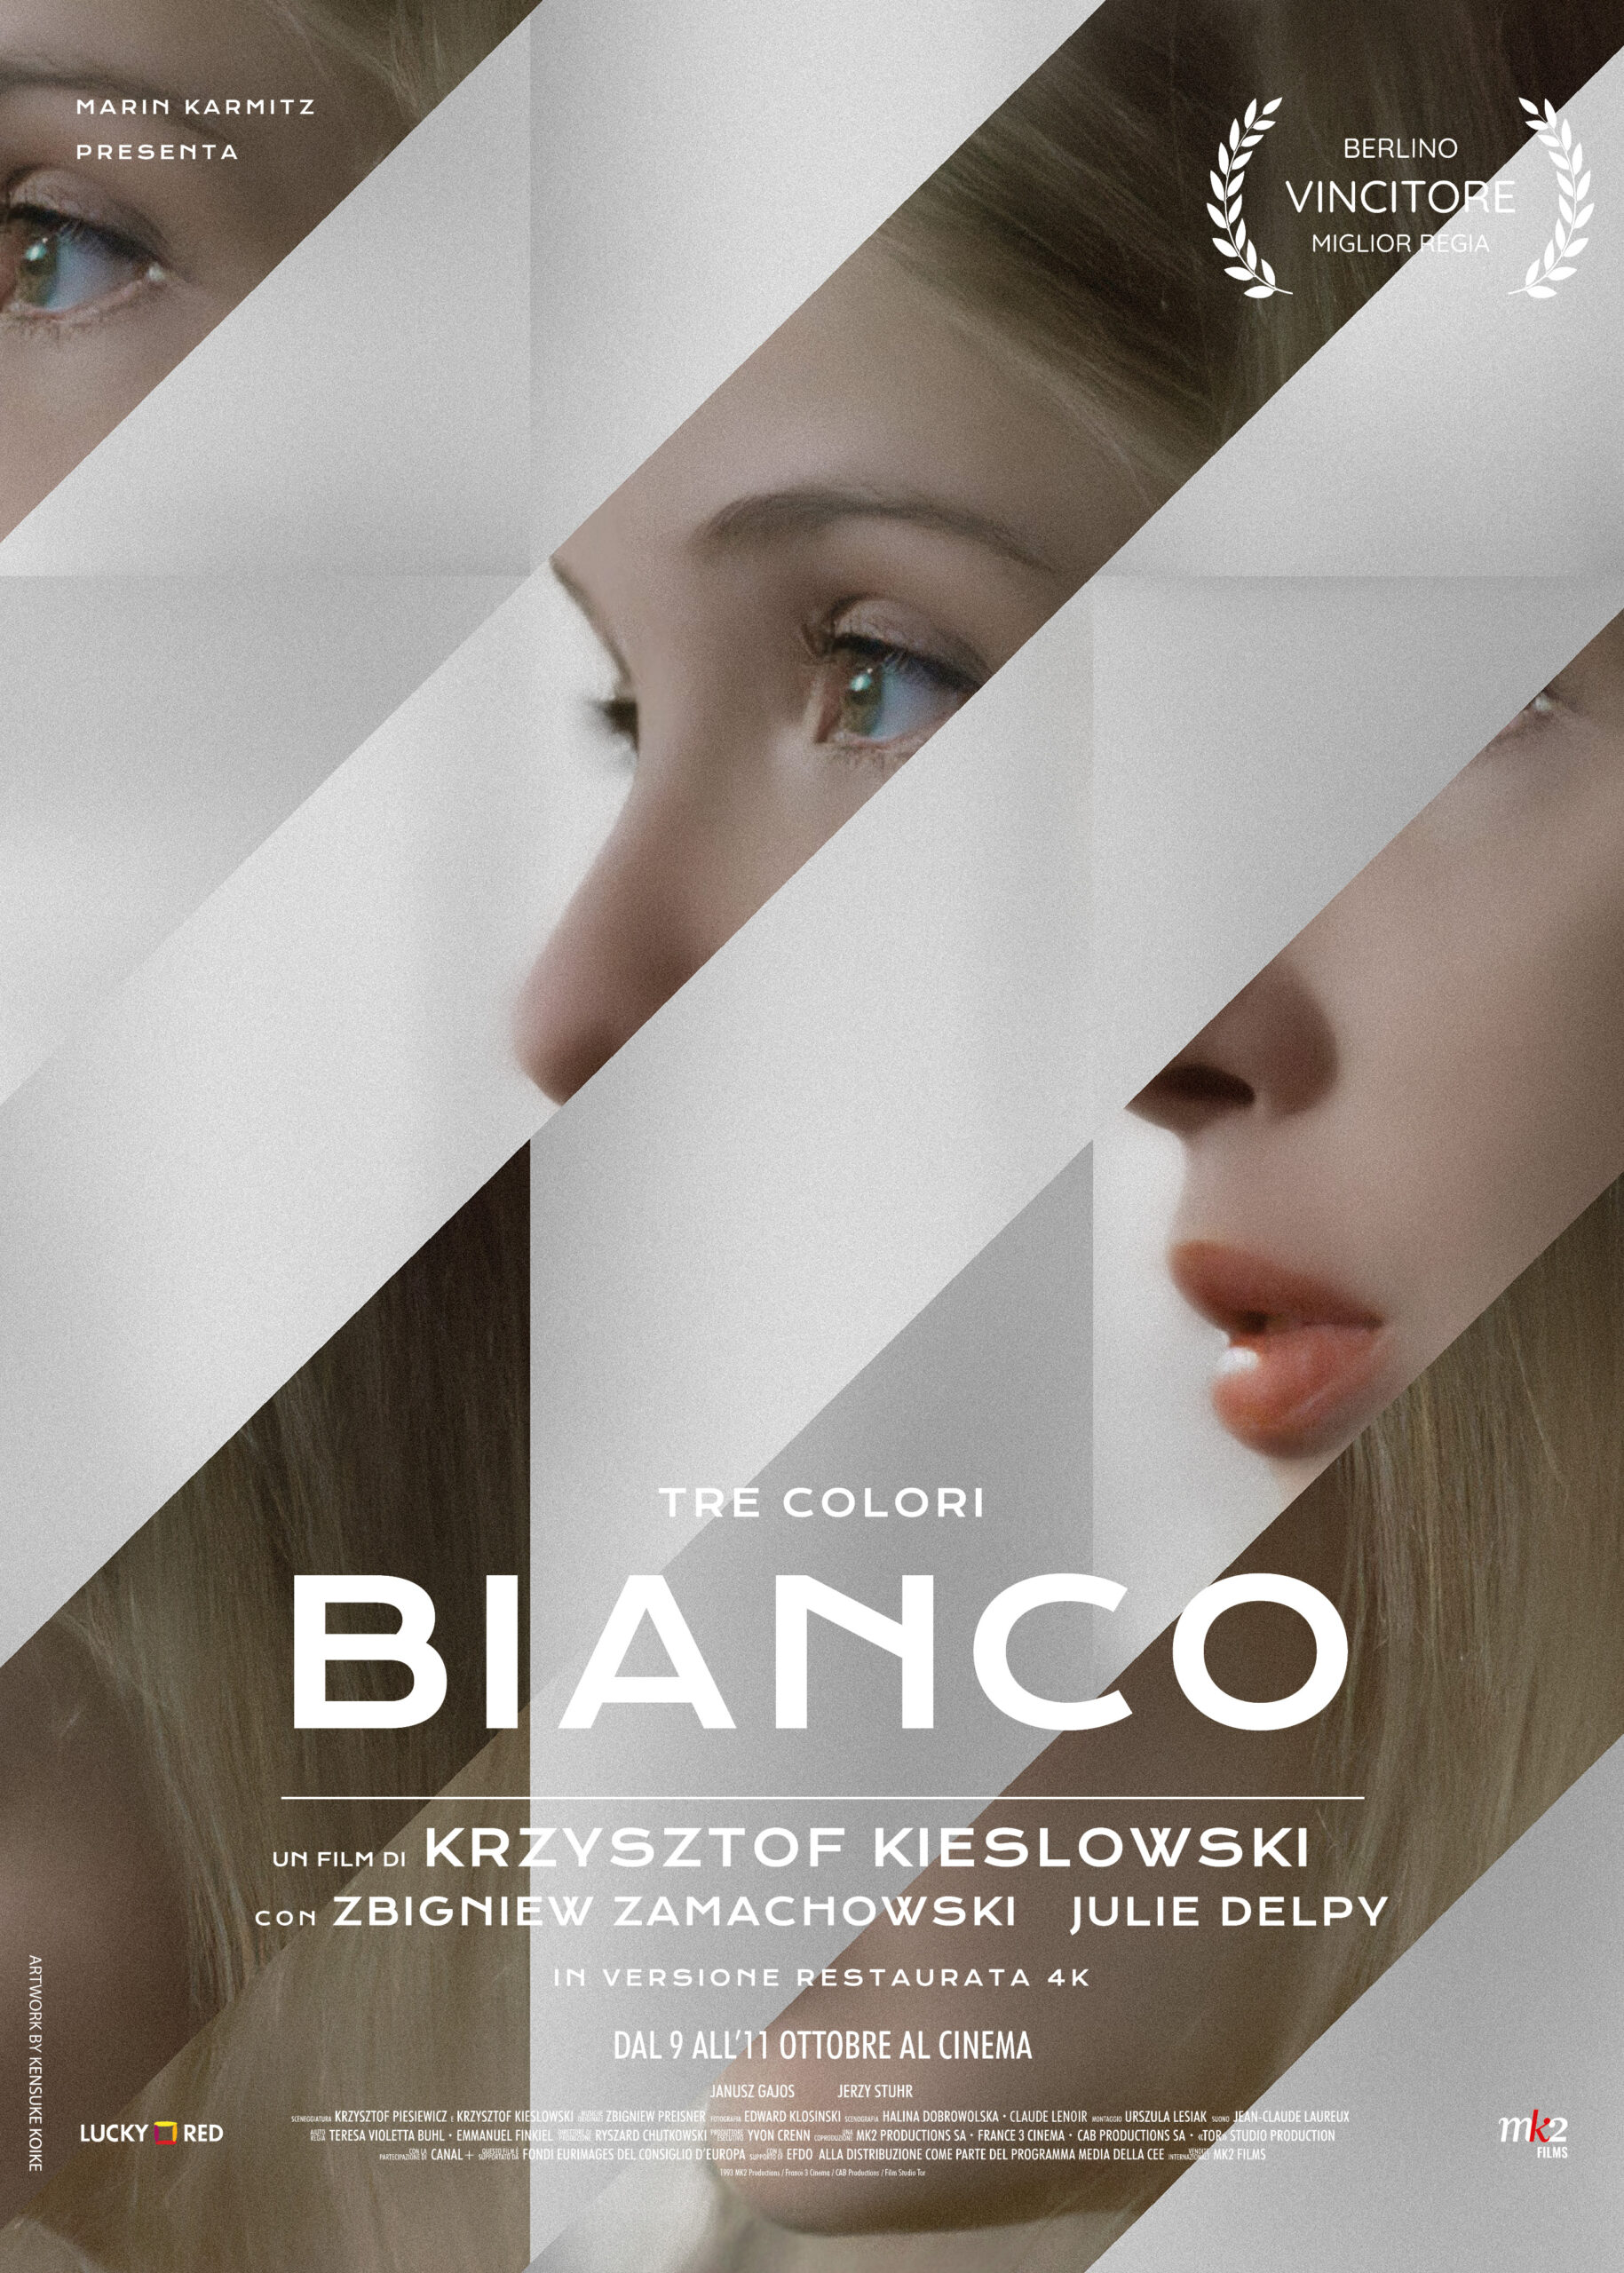 Film Bianco di Krzysztof Kieślowski: al cinema dal 9 all'11 ottobre